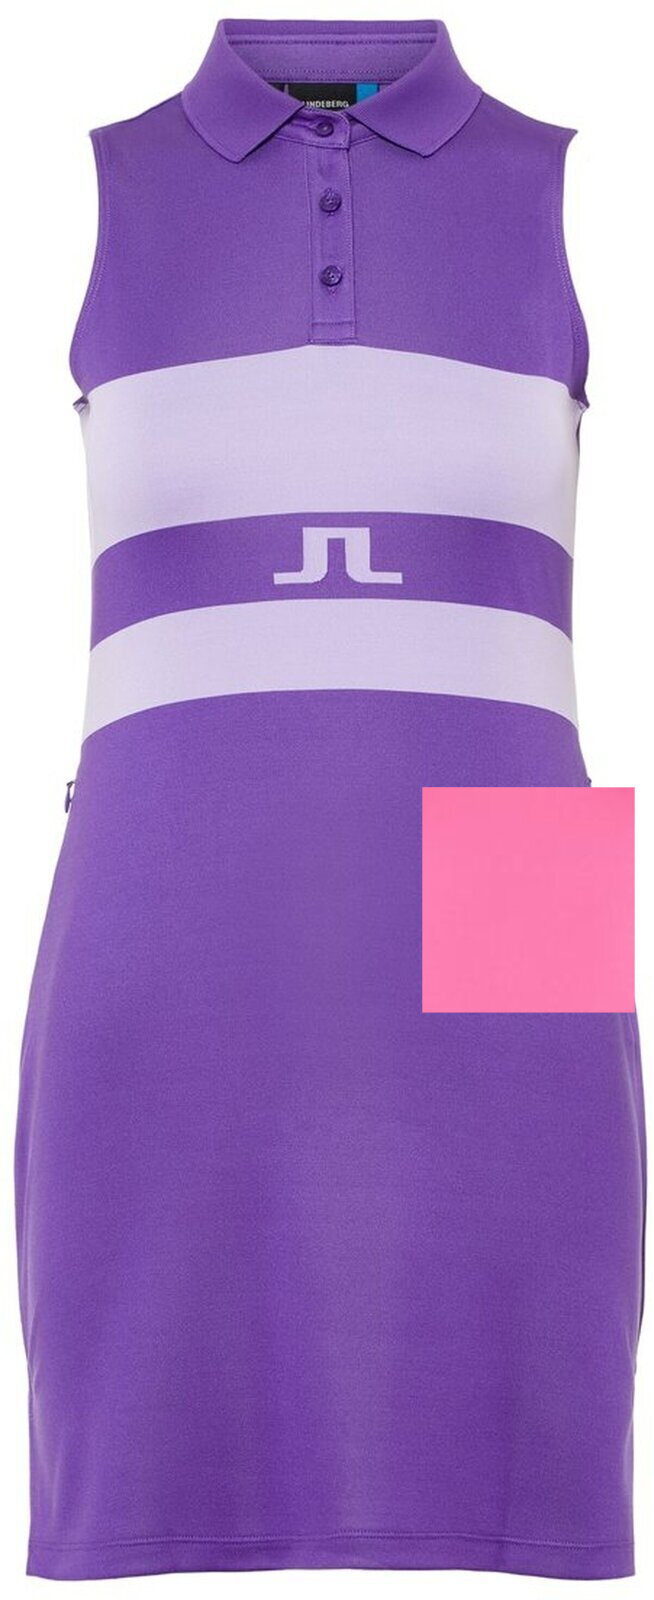 Skirt / Dress J.Lindeberg Cina Tx Jaquard Dress Pop Pink S